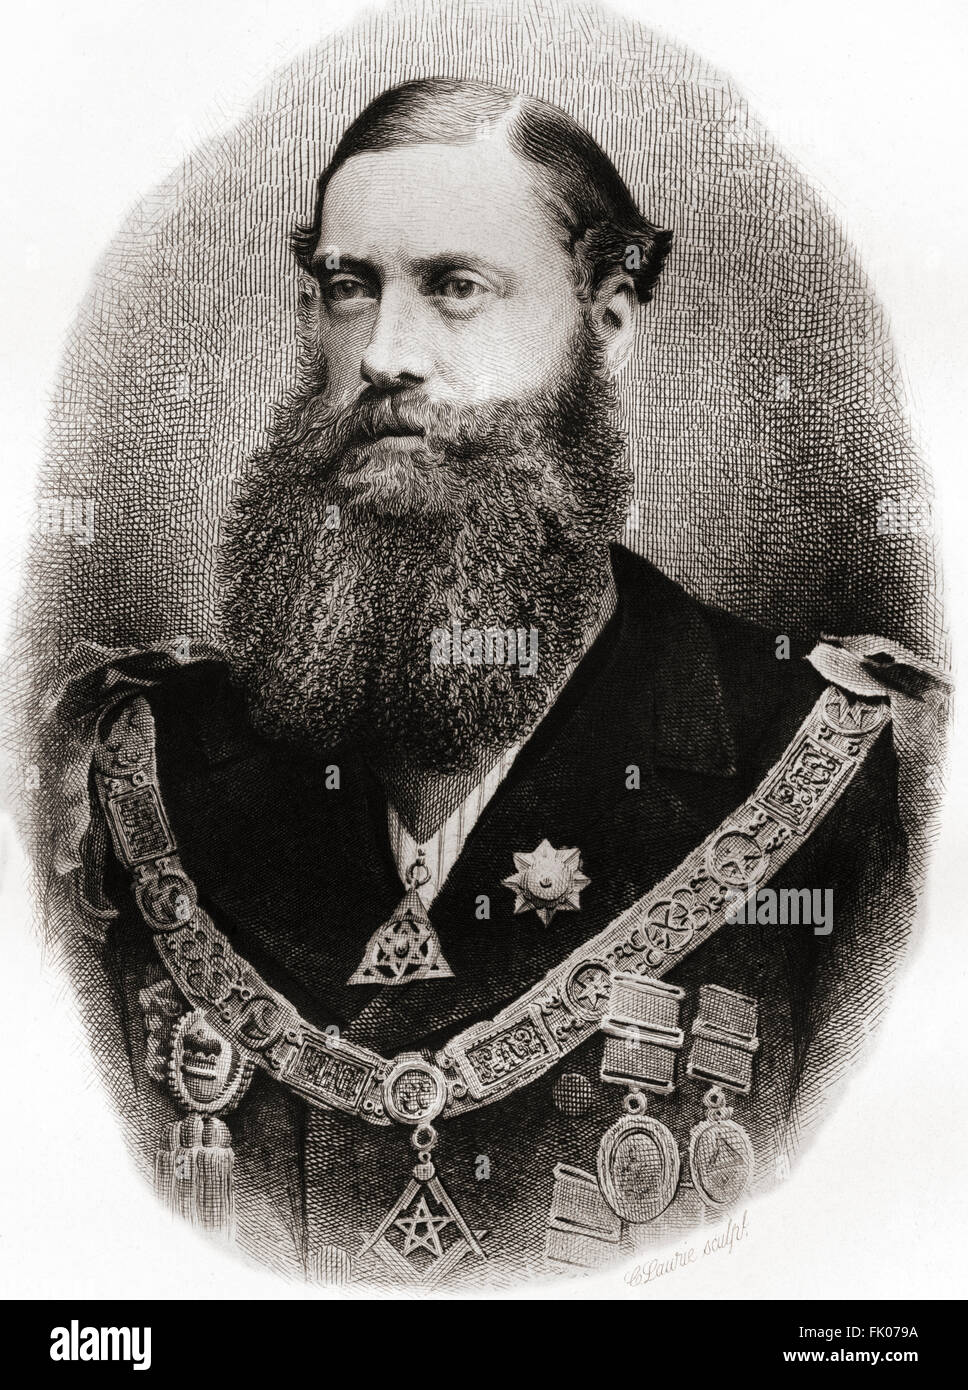 Bootle-Wilbraham-du-Prince-Édouard, 1er comte de Lathom, 1837 - 1898, alias le Seigneur Skelmersdale entre 1853 et 1880. Homme politique conservateur britannique et vice-Grand Maître de la Grande Loge Unie de maçons de l'Angleterre. Banque D'Images